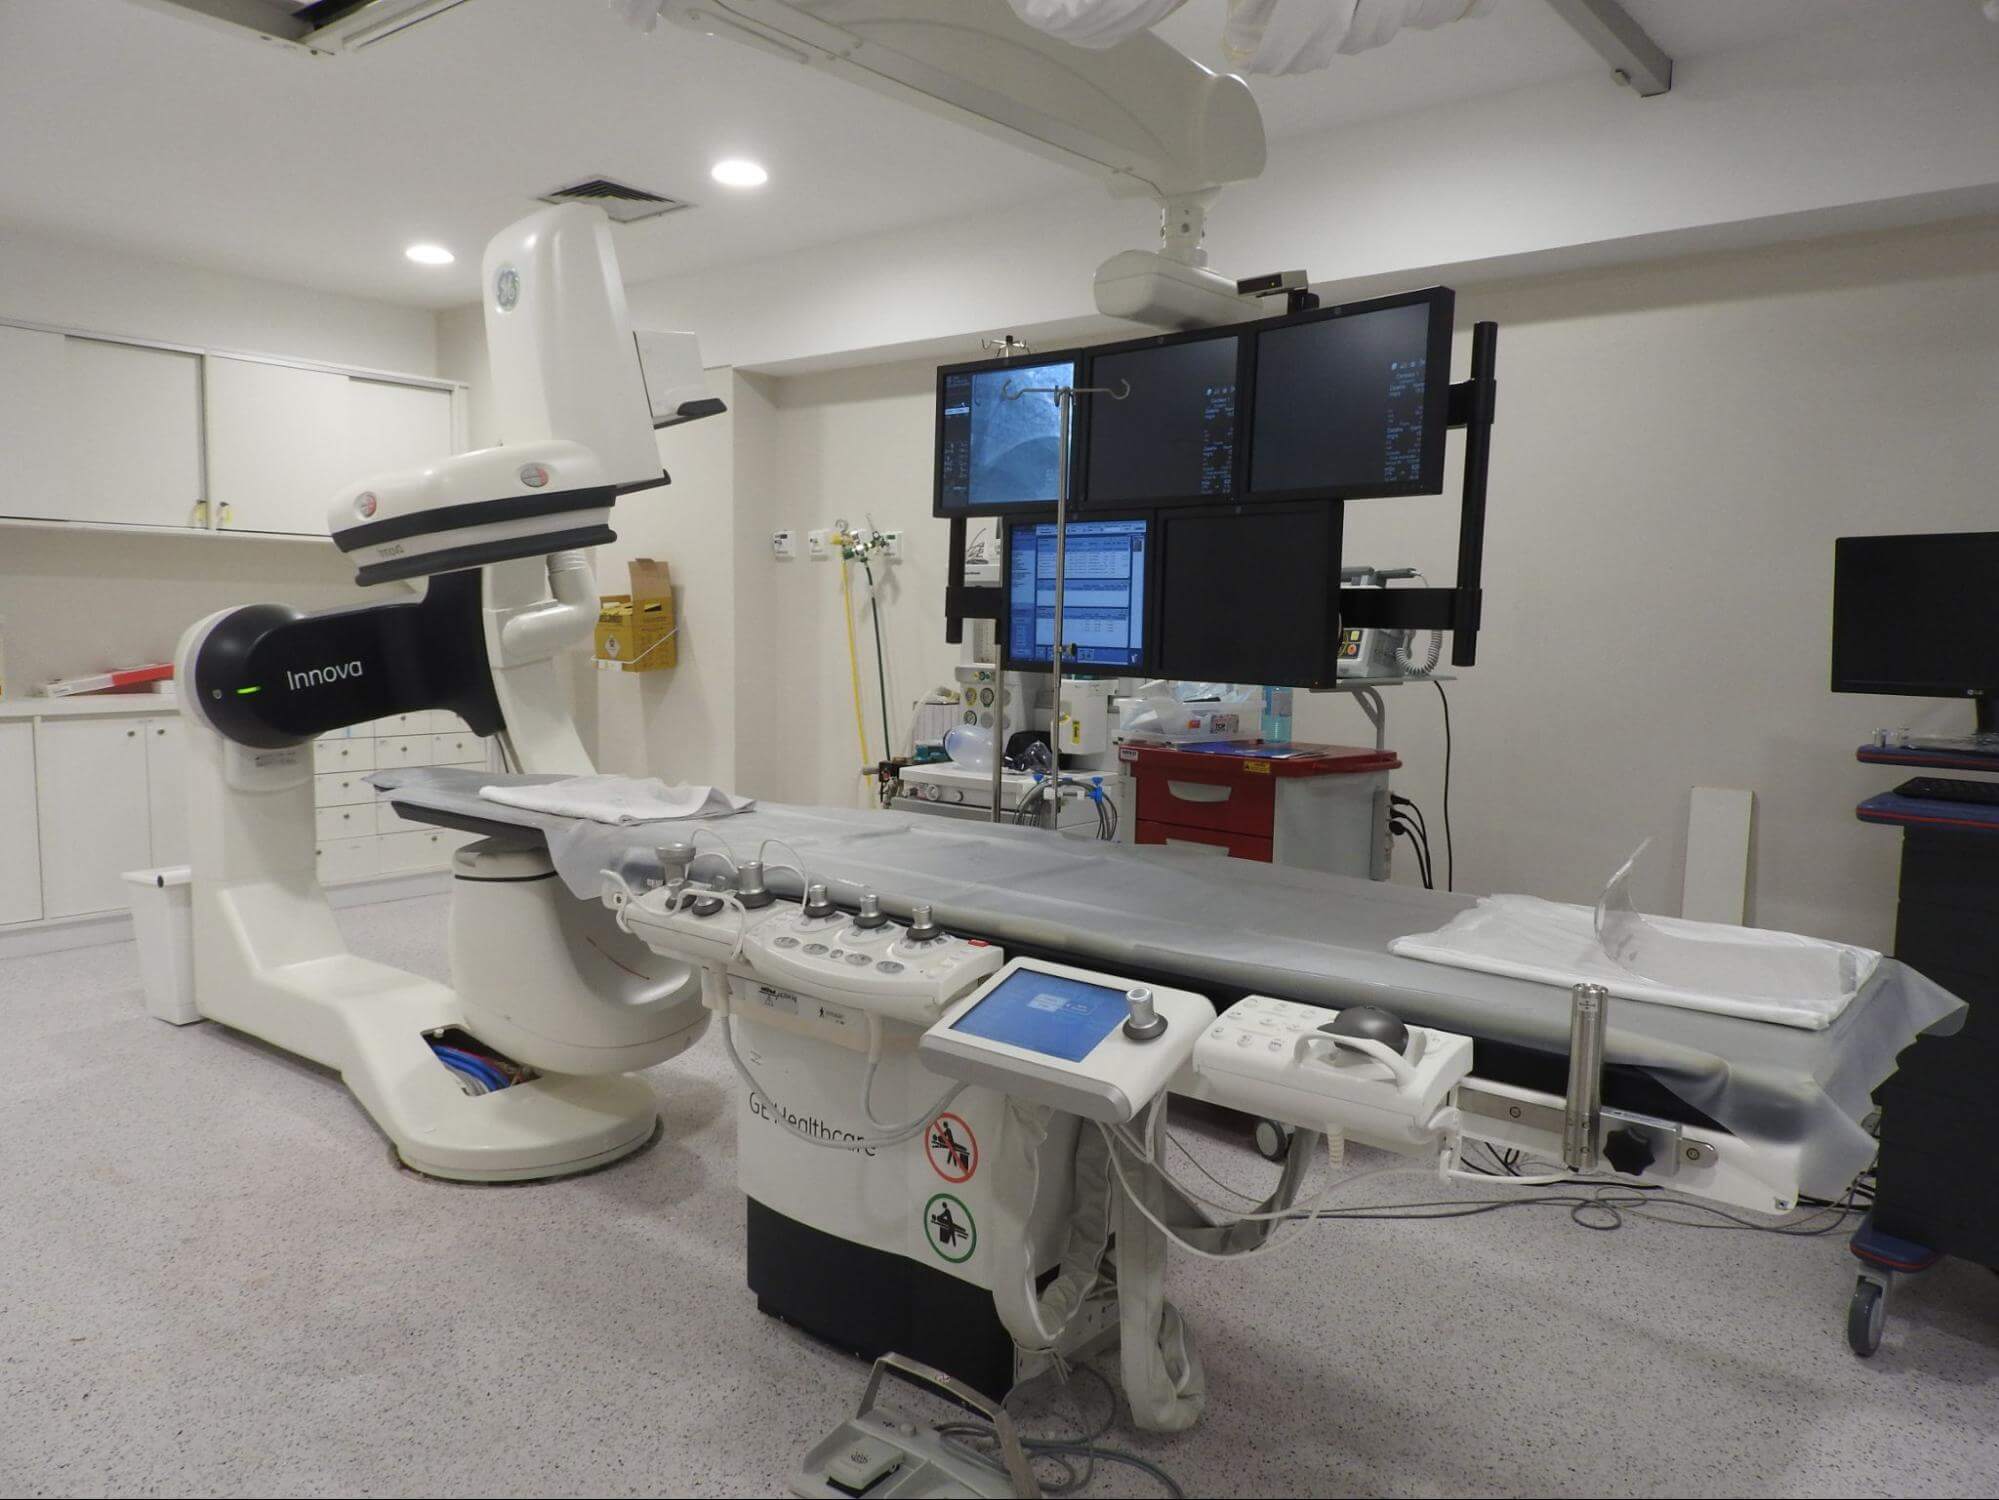 a sala de exames de um hospital está presente na imagem, com diversos monitores de monitoramento da saúde de pacientes